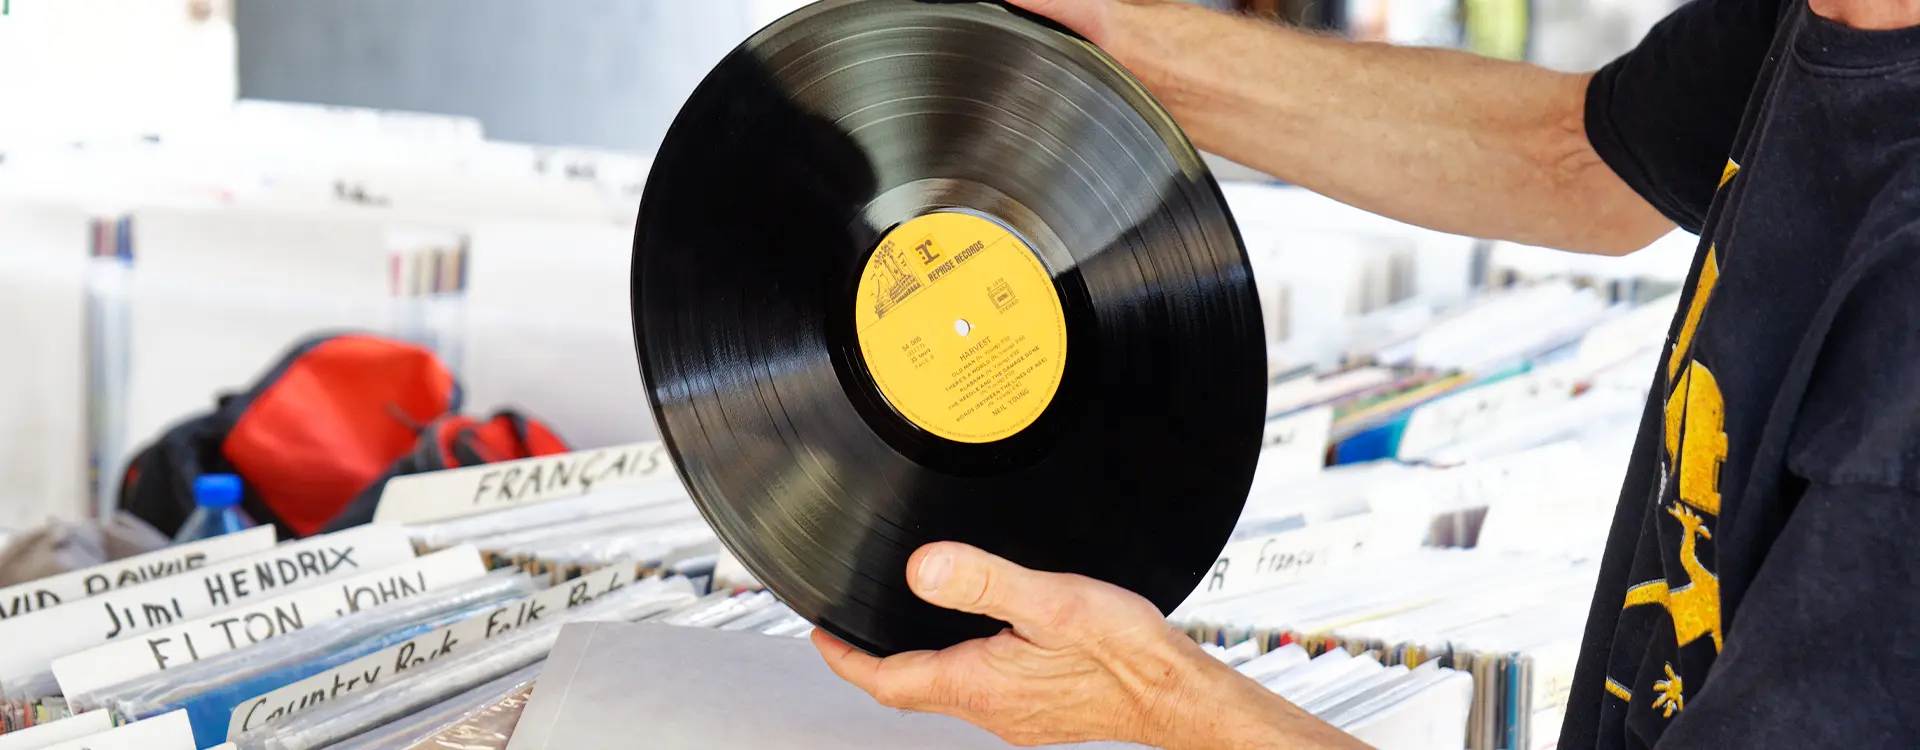 Vente et achat de disques vinyle en Savoie et en Rhône-Alpes